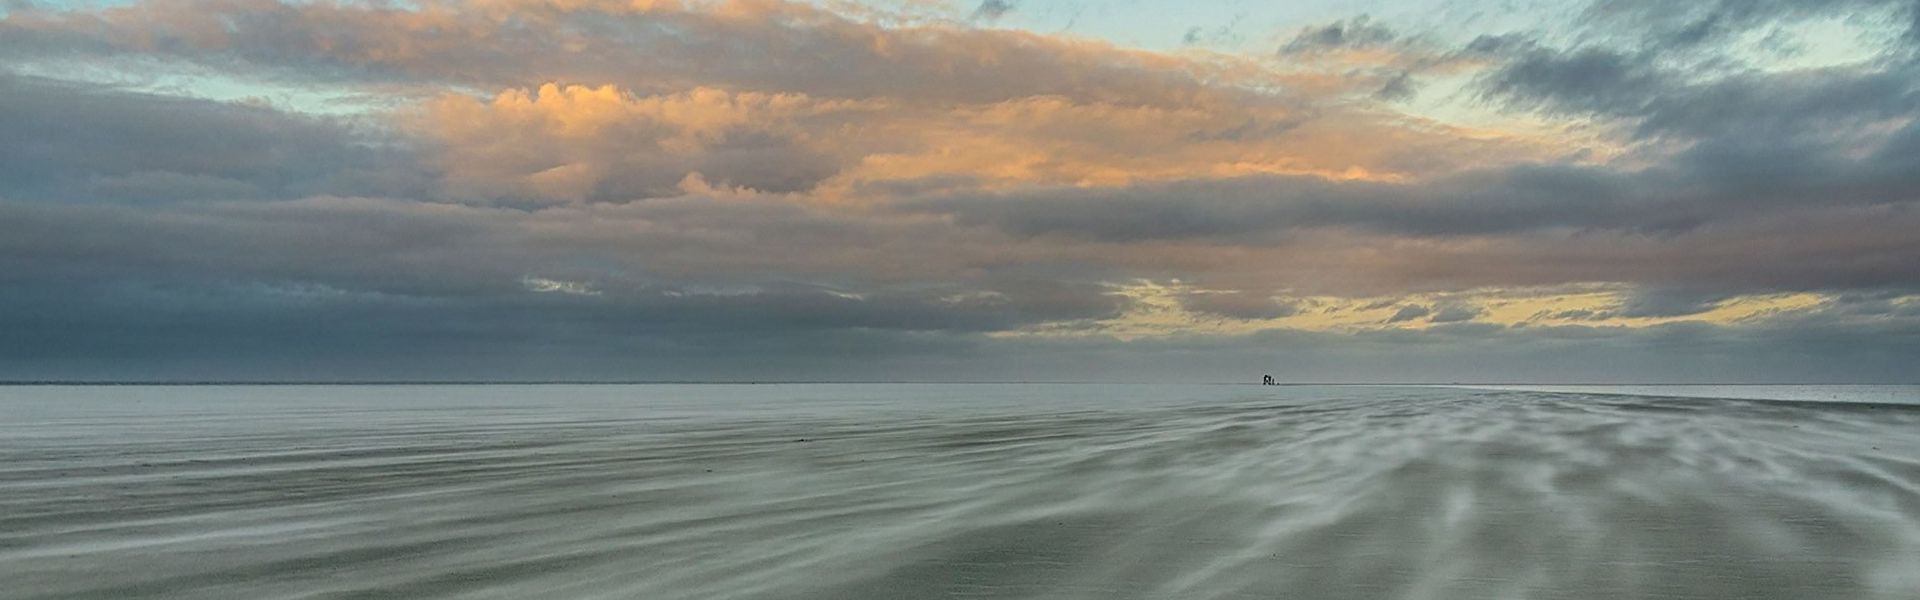 Wattenmeer, Blick zum weiten Horizont bei Ebbe